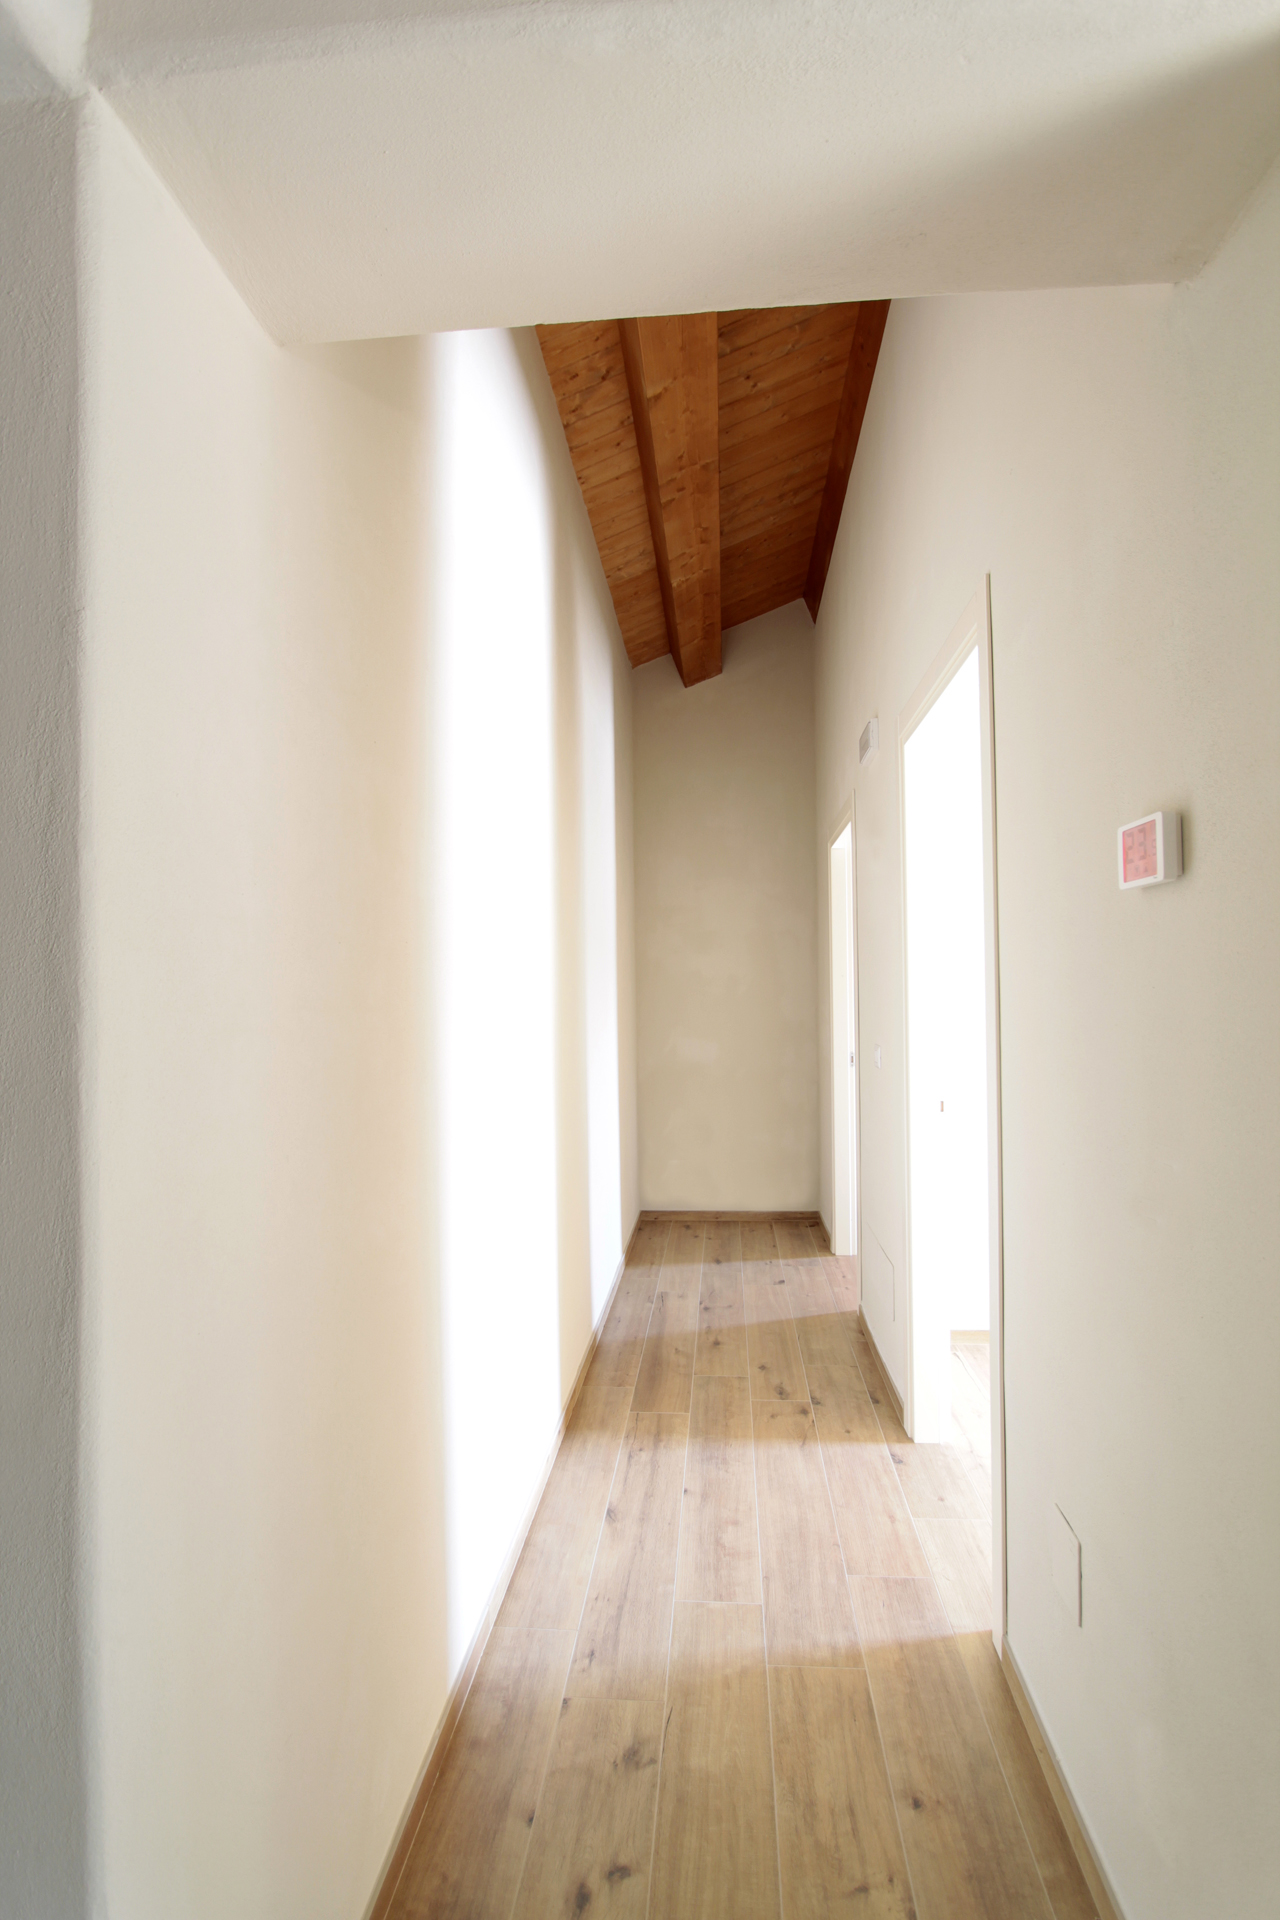 Casa di campagna - interno - corridoio luminoso con tetto in legno e pareti con spigoli arrotondati in intonaco a calce